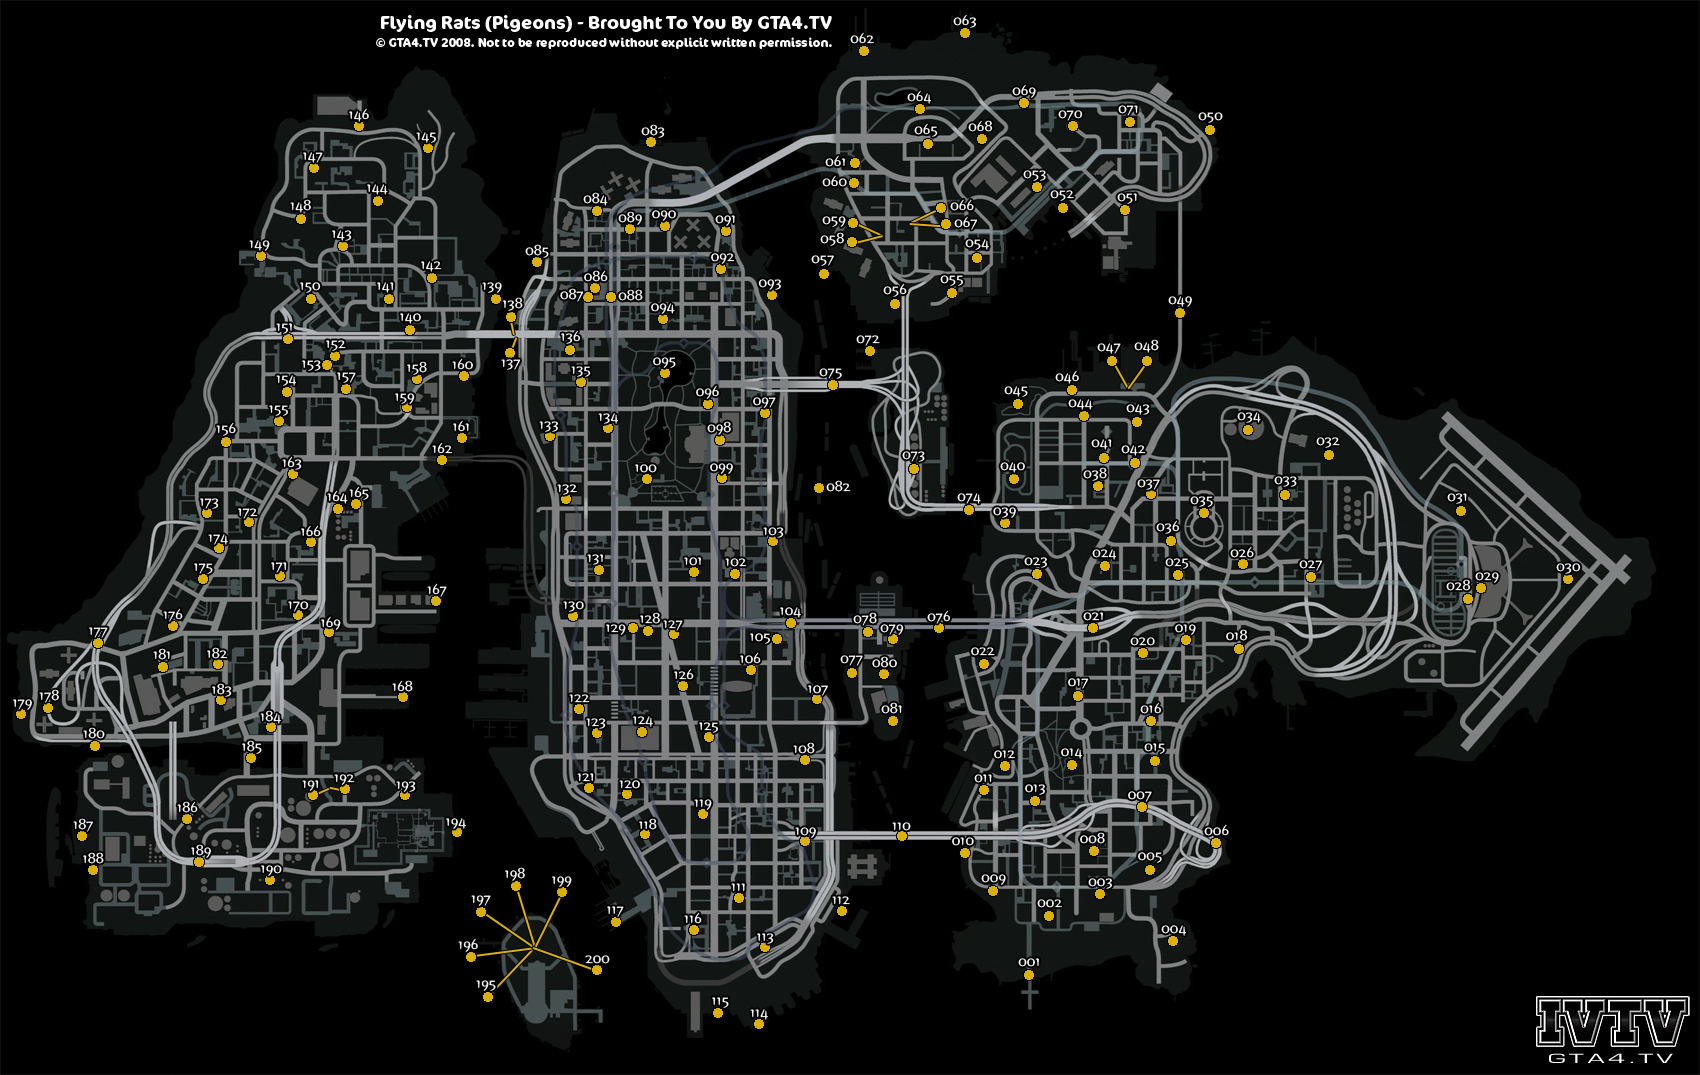 城地图) liberty city area street map (from gtaiv/manuals/gta4